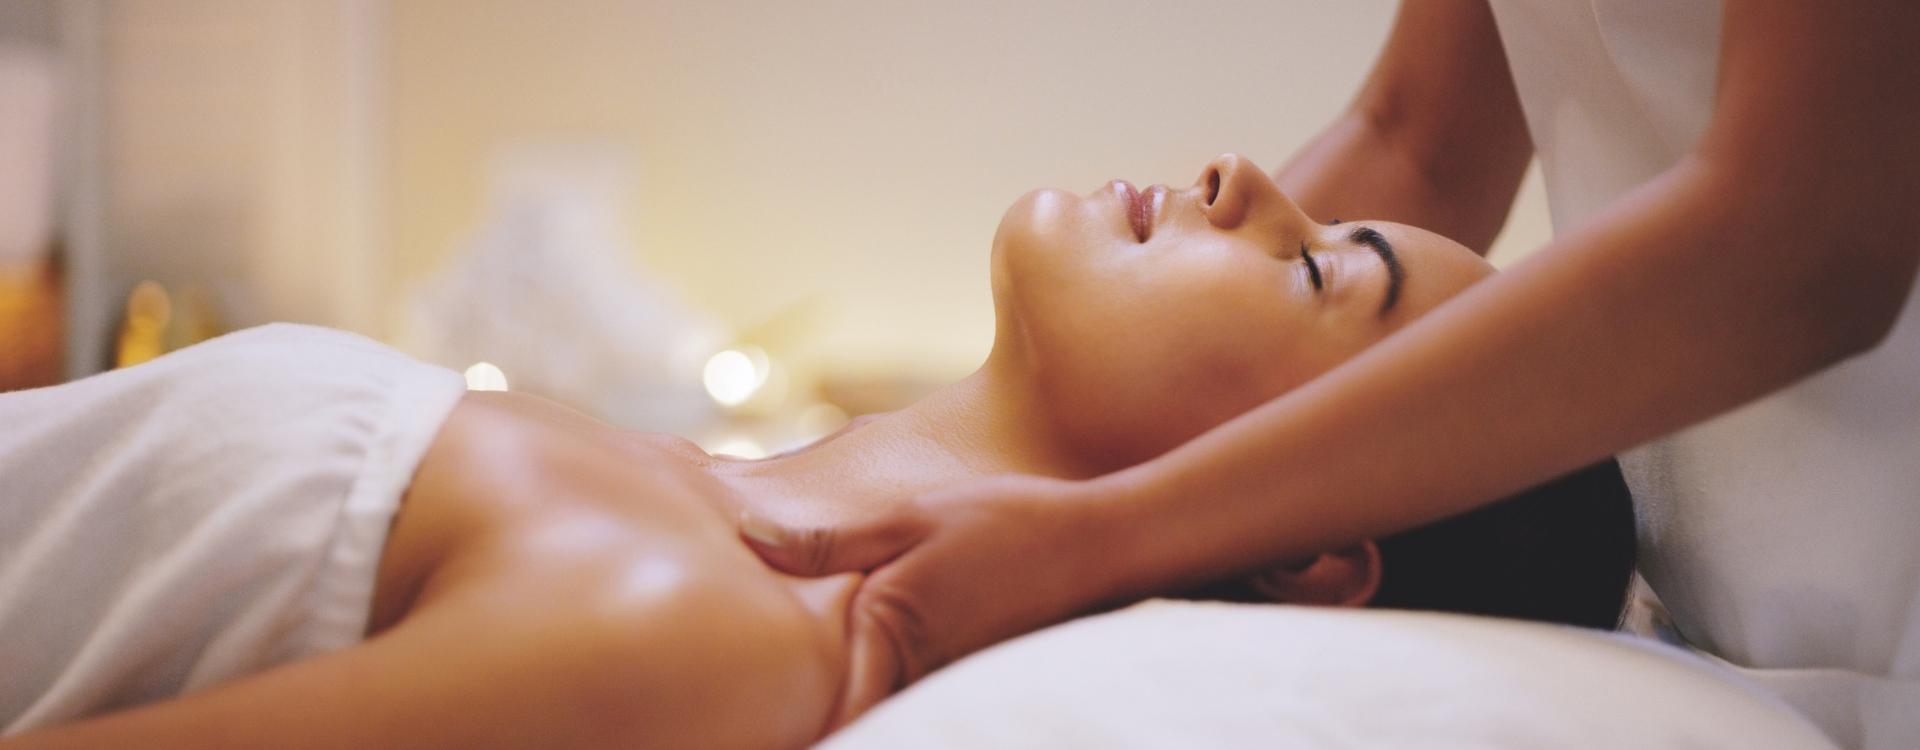 Leżąca kobieta podczas masażu